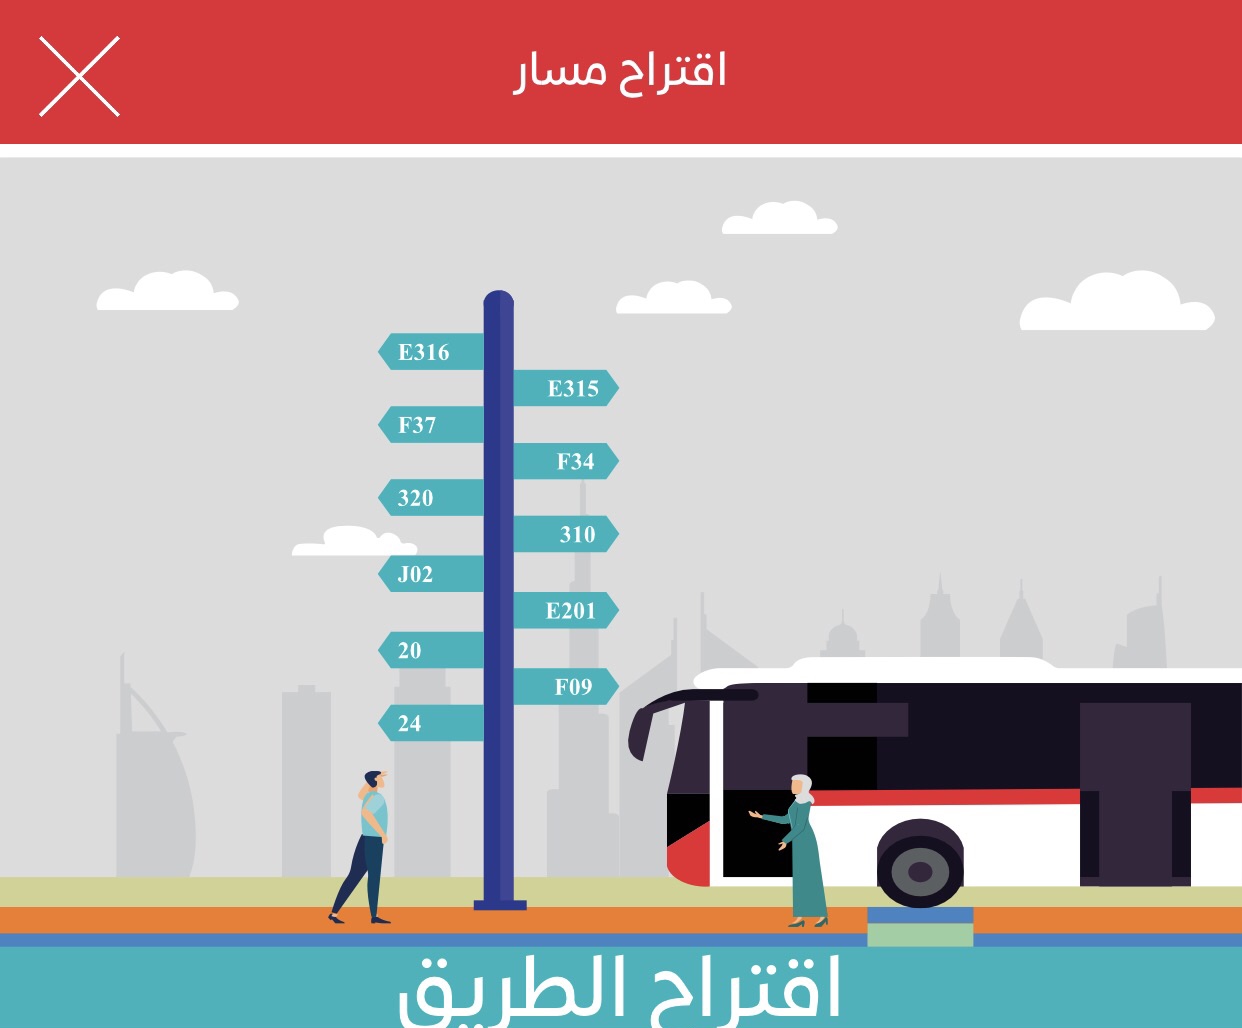 ‫طرق دبي تتيح للجمهور اقتراح خطوط جديدة للحافلات عبر تطبيق الهيئة الذكي‬ ‫ ‬